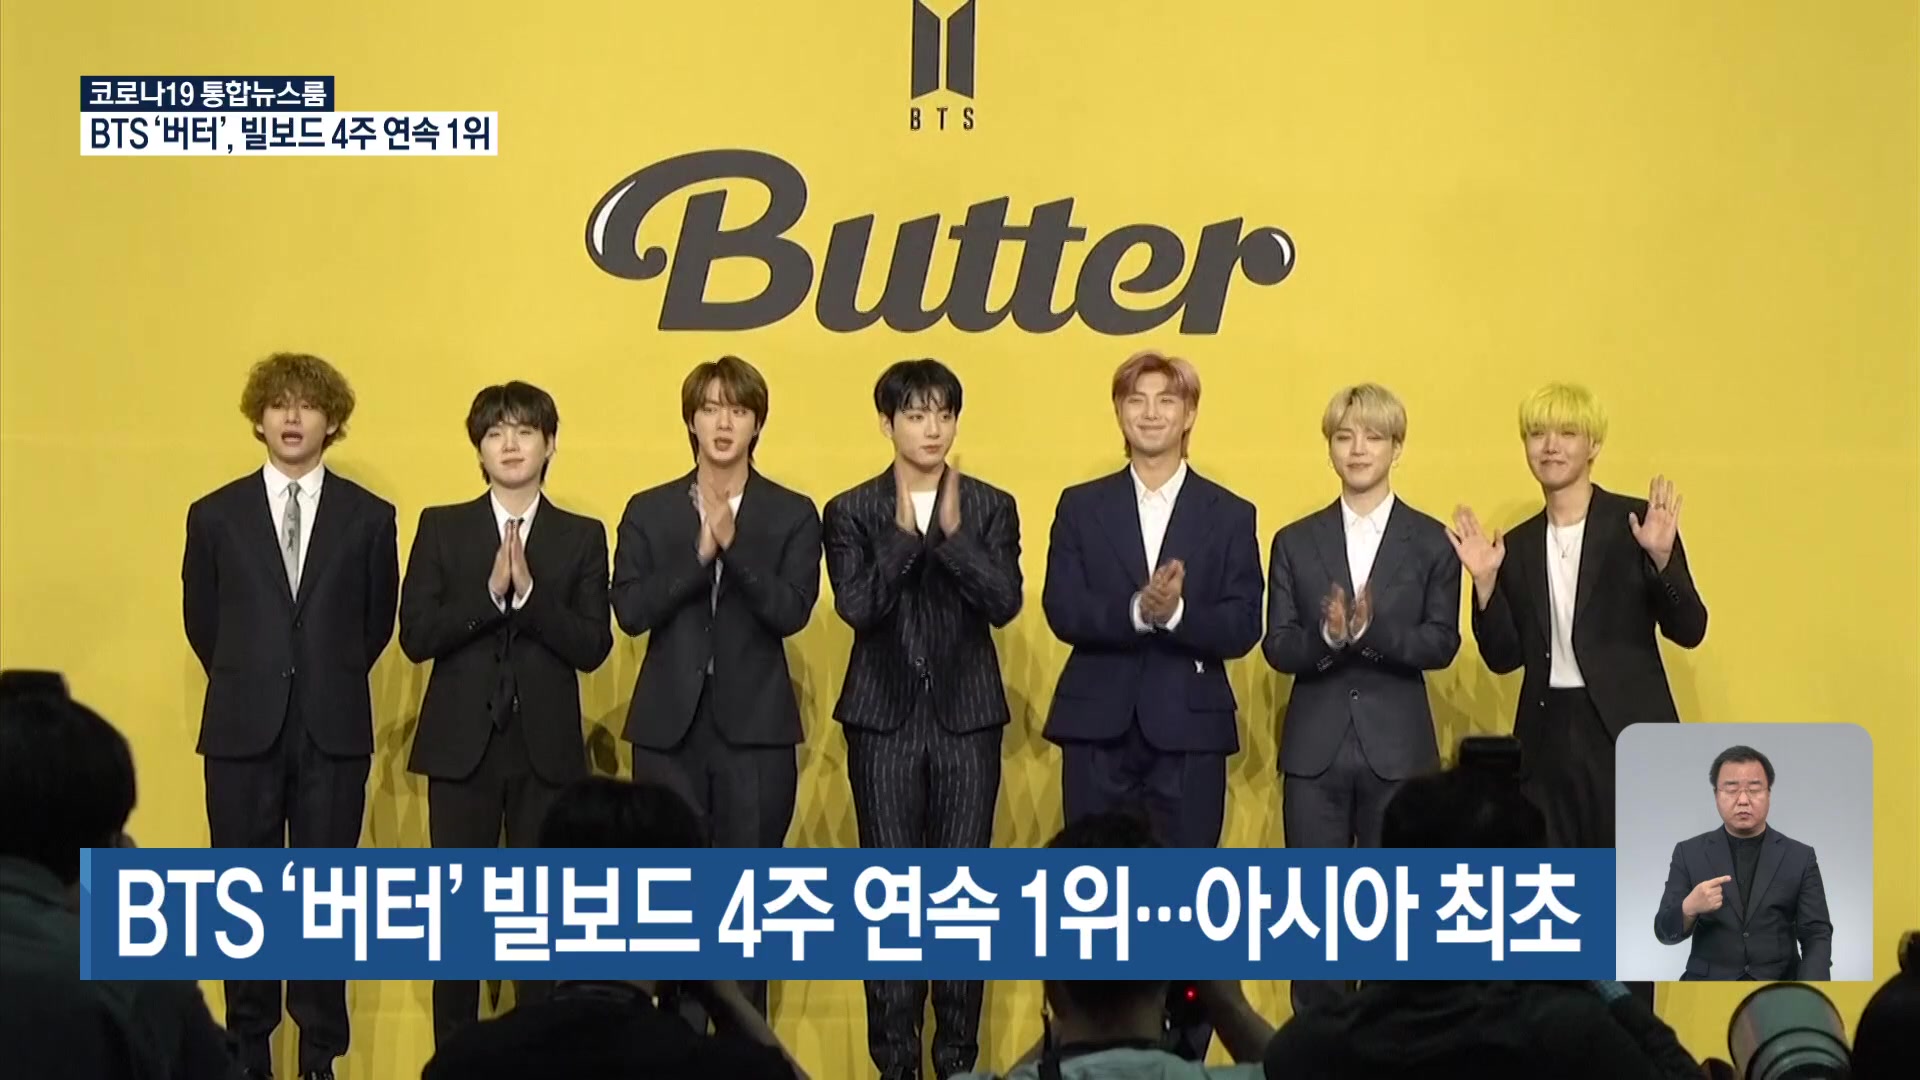 BTS ‘버터’, 빌보드 4주 연속 1위…아시아 최초